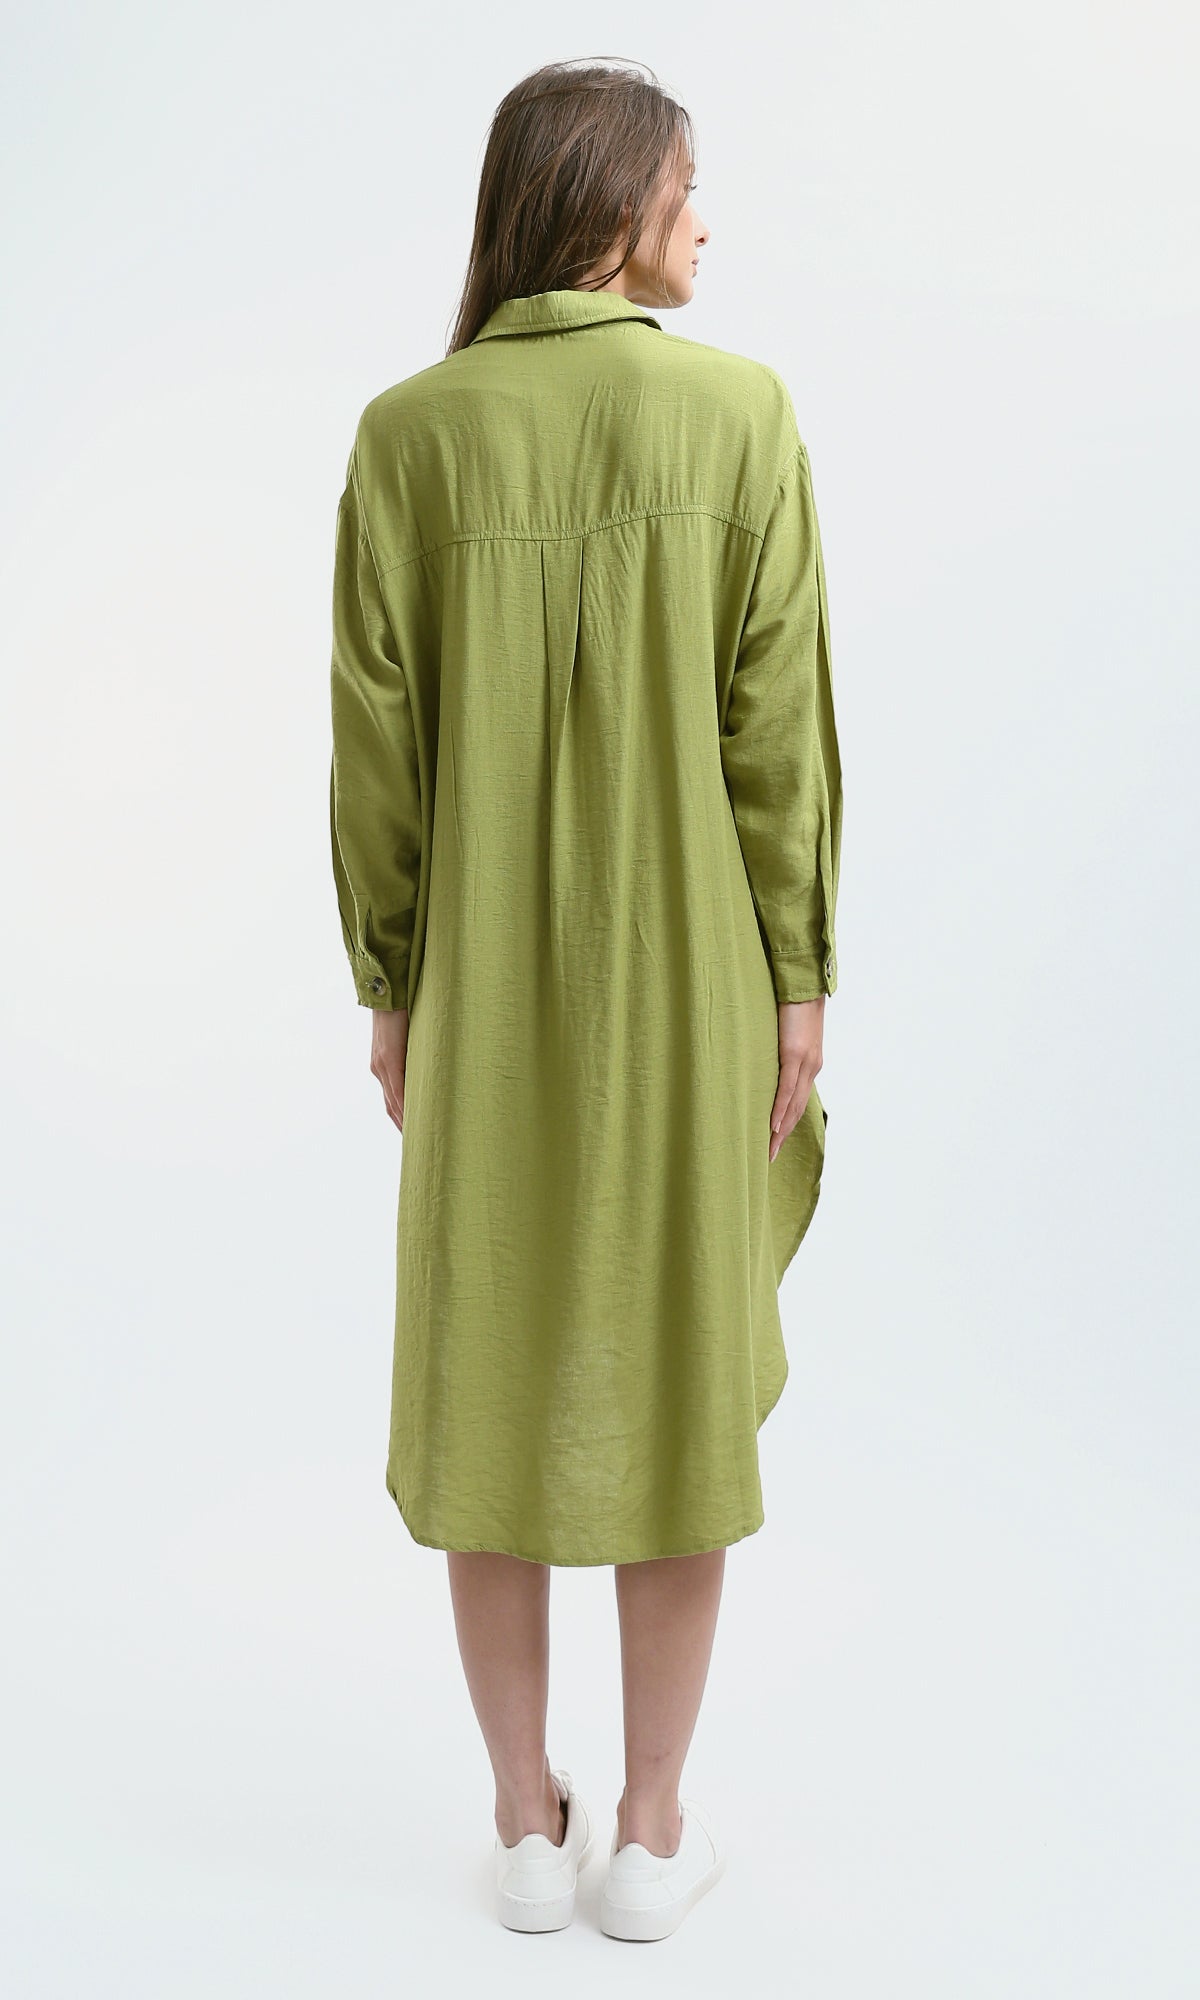 O179834 Casual Apple Green Textured Summer Shirt Dress